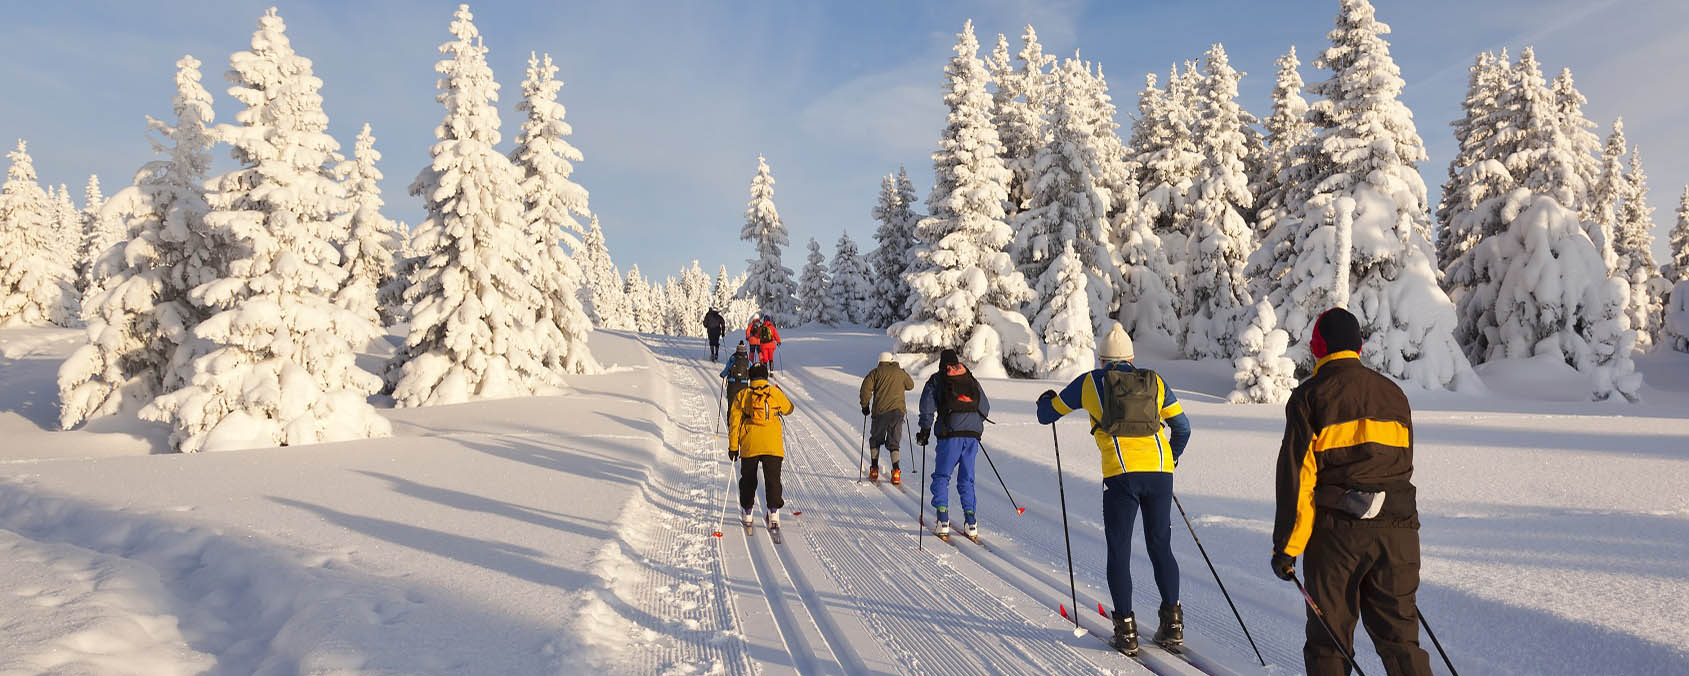 Эксперты назвали наиболее полезный и безопасный вид зимнего спорта